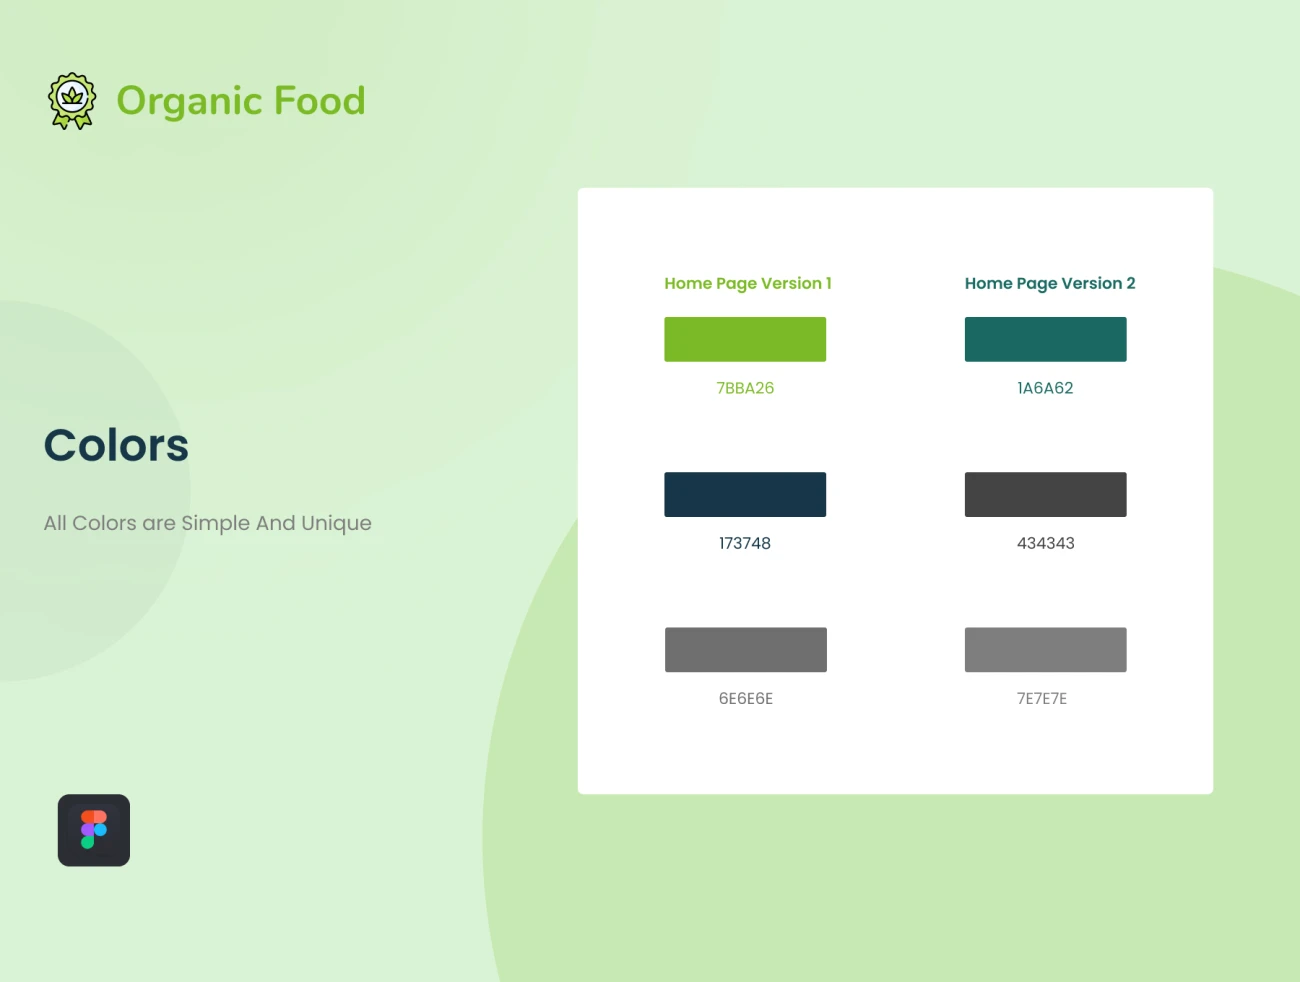 免费有机食品在线商店网站设计模板 Organic Food Store Template-UI/UX、ui套件、主页、介绍、博客、海报、网站、网购、详情、预订-到位啦UI